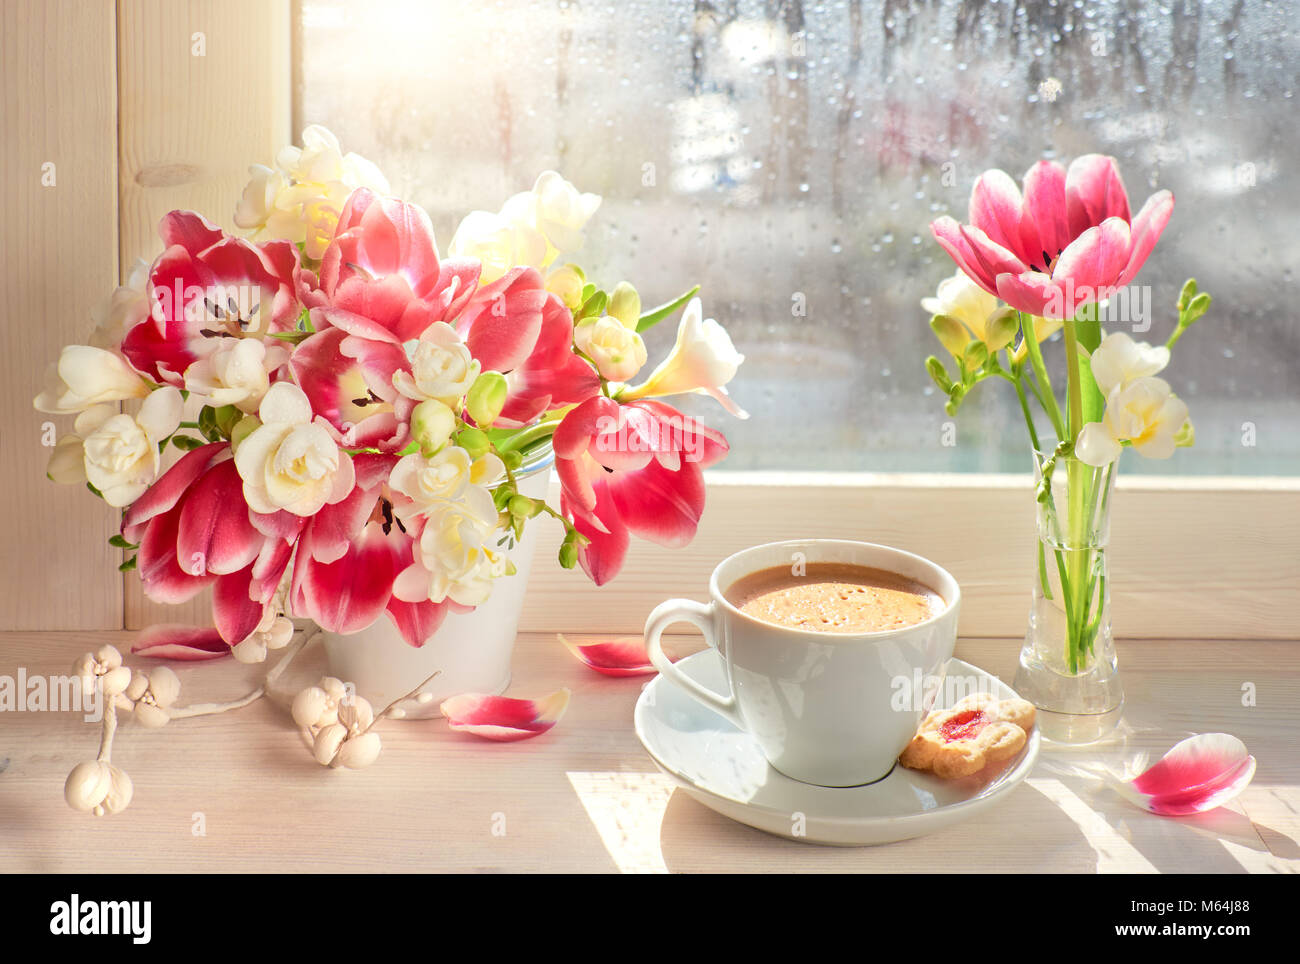 Tasse Kaffee am Fenster, Sonne nach dem Regen. Frühling Blumen: rosa Tulpen  und weißen Freesien Stockfotografie - Alamy